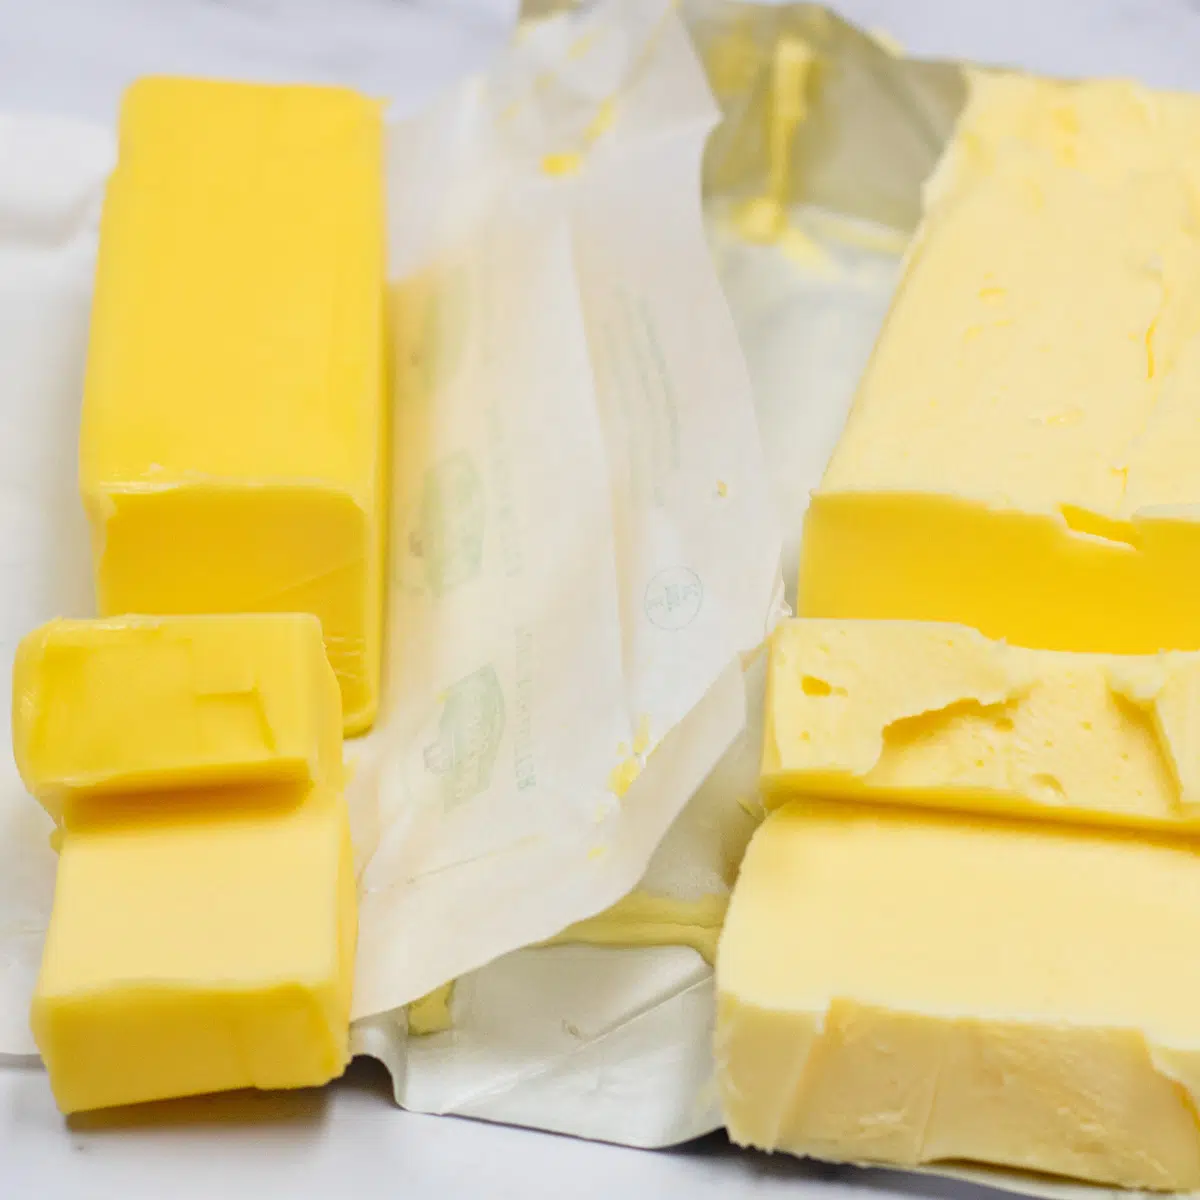 खुले पैकेजों की तुलना में मक्खन बनाम छोटा करने की अगल-बगल की छवि।